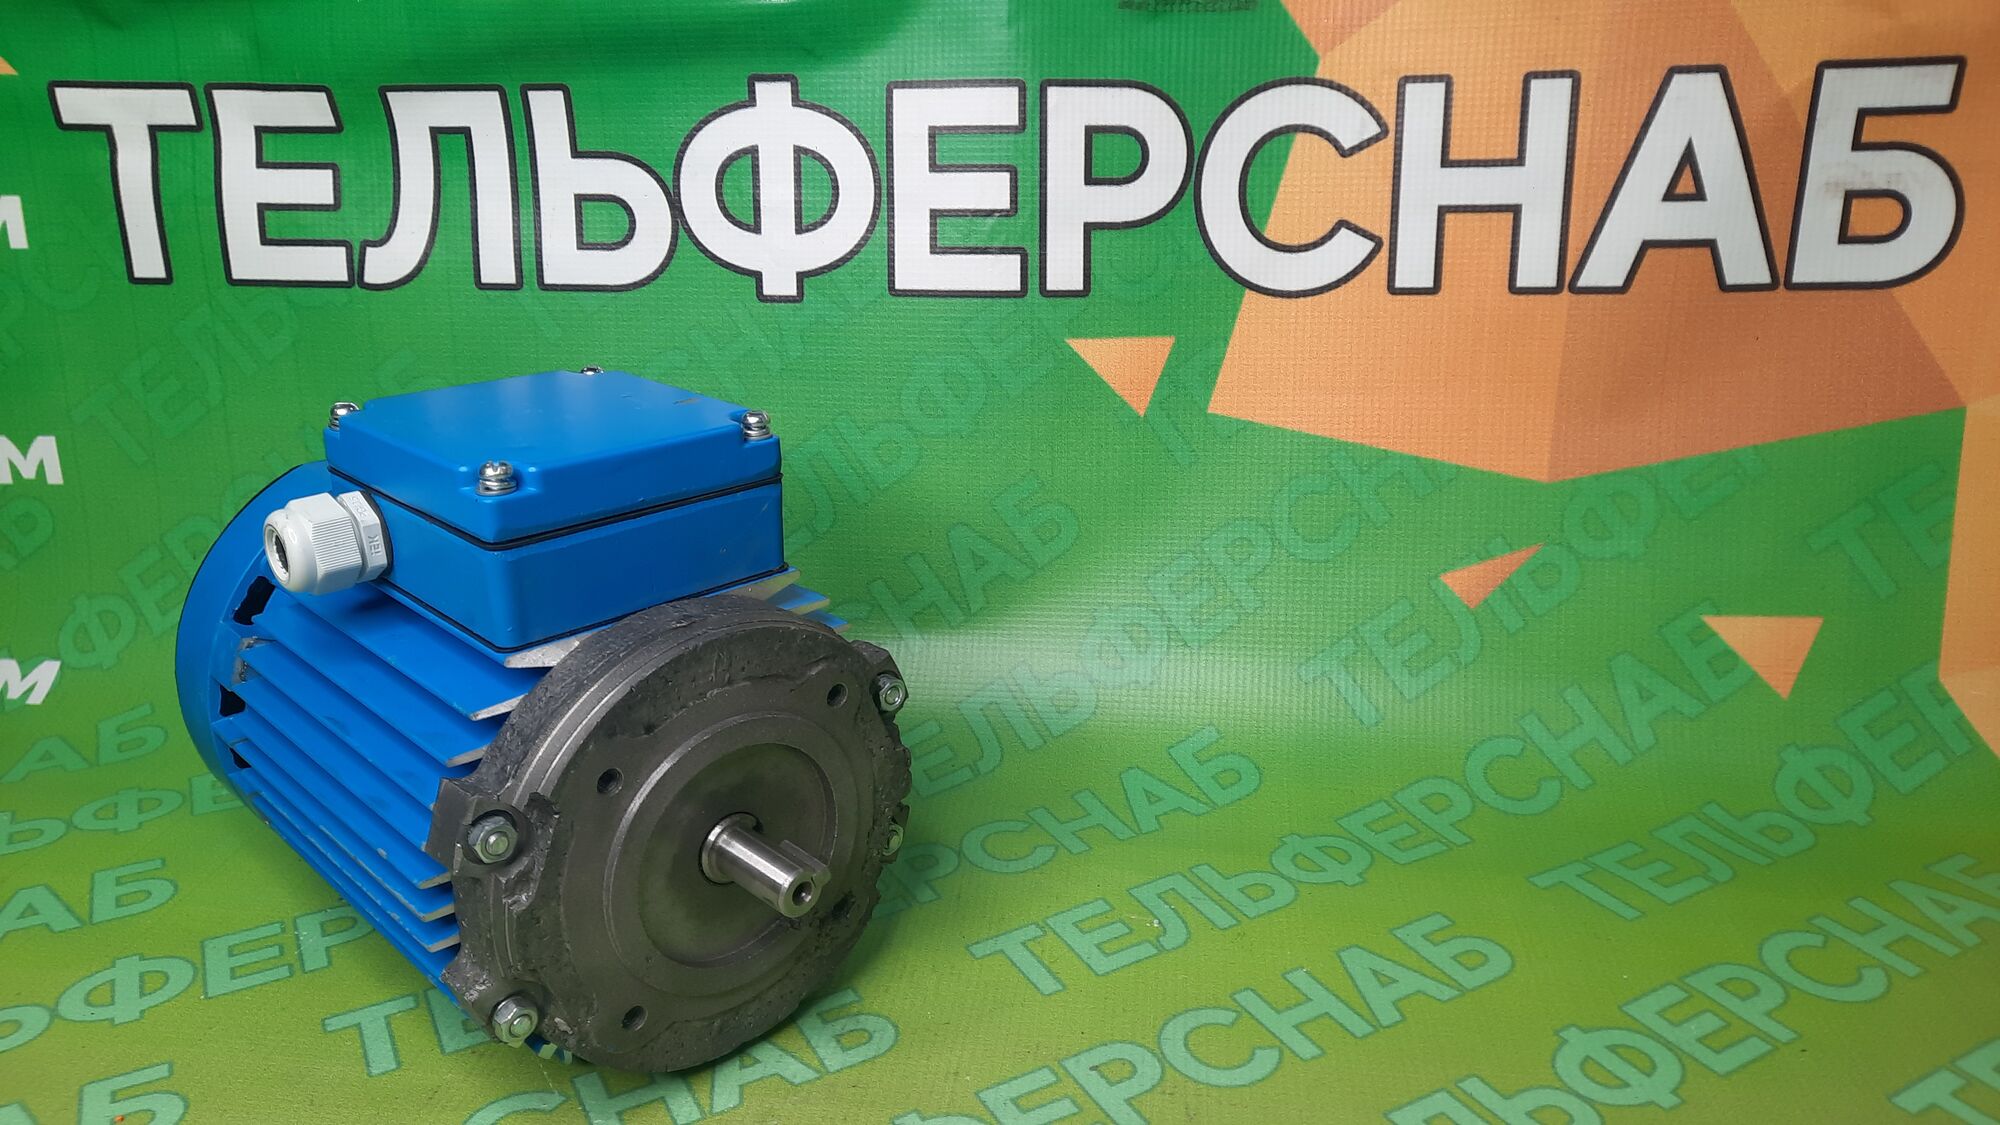 Электродвигатель со встроенным тормозом АДС71А6Е2TУ2 0.37 кВт 1000 об/мин, 1300 об/мин 380 В фланец 80 мм, Россия